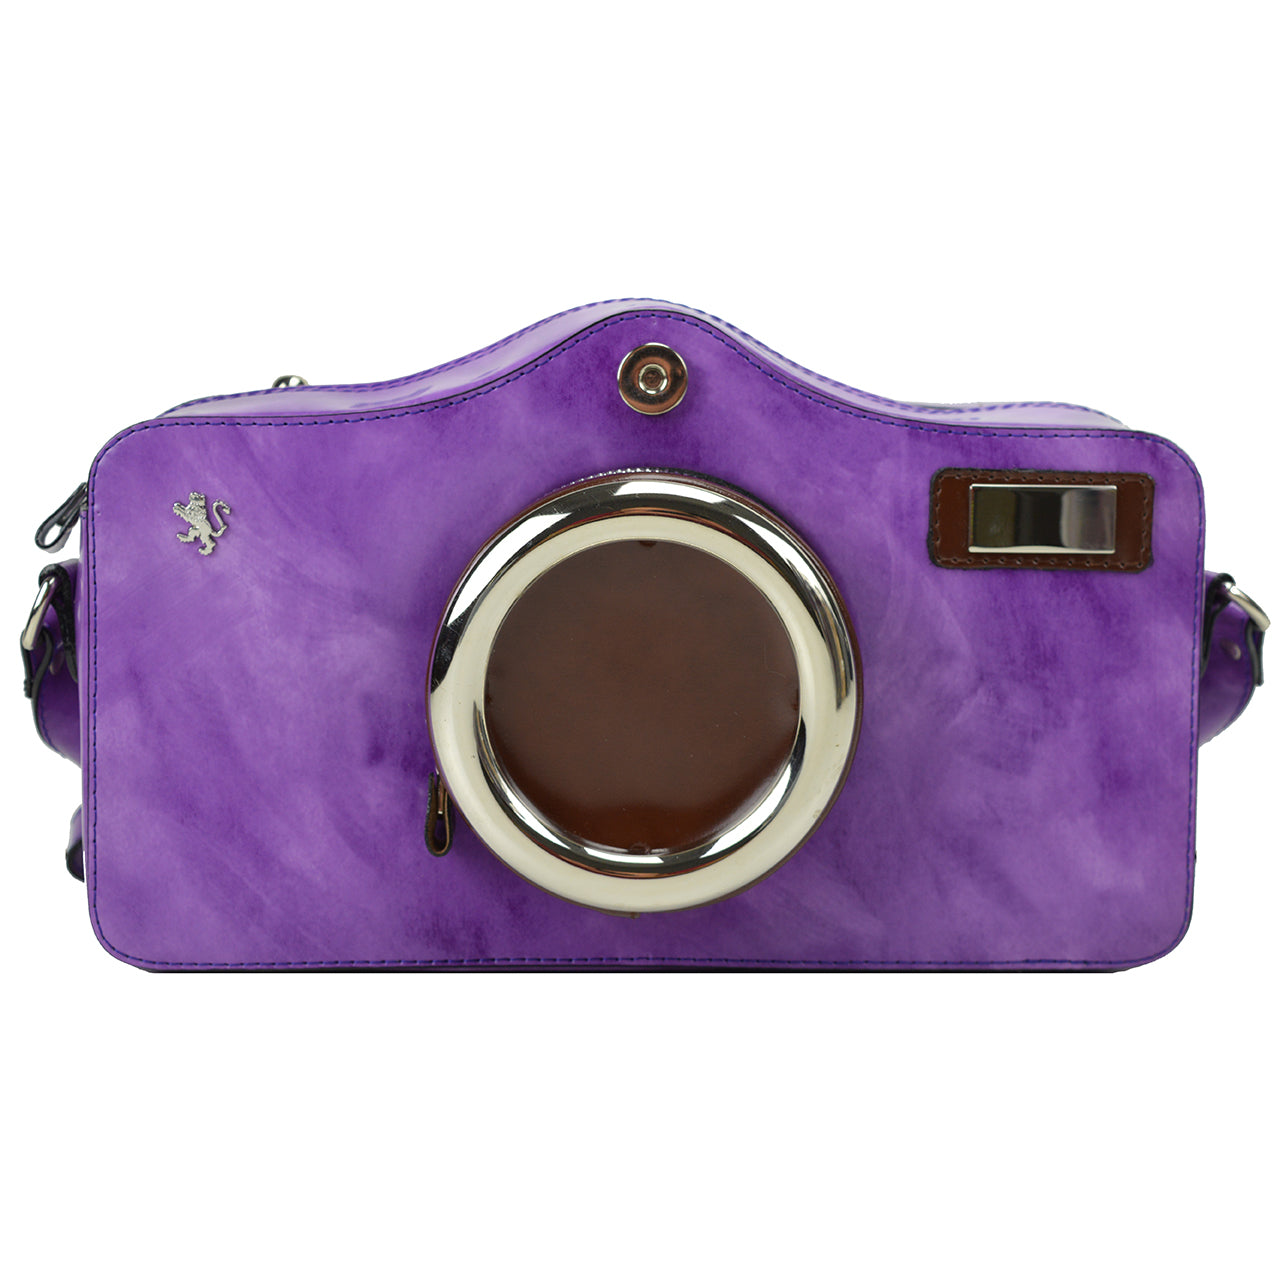 Pratesi Photocamera Radica Shoulder Bag in genuine Italian leather - Brunelleschi Leather Violet